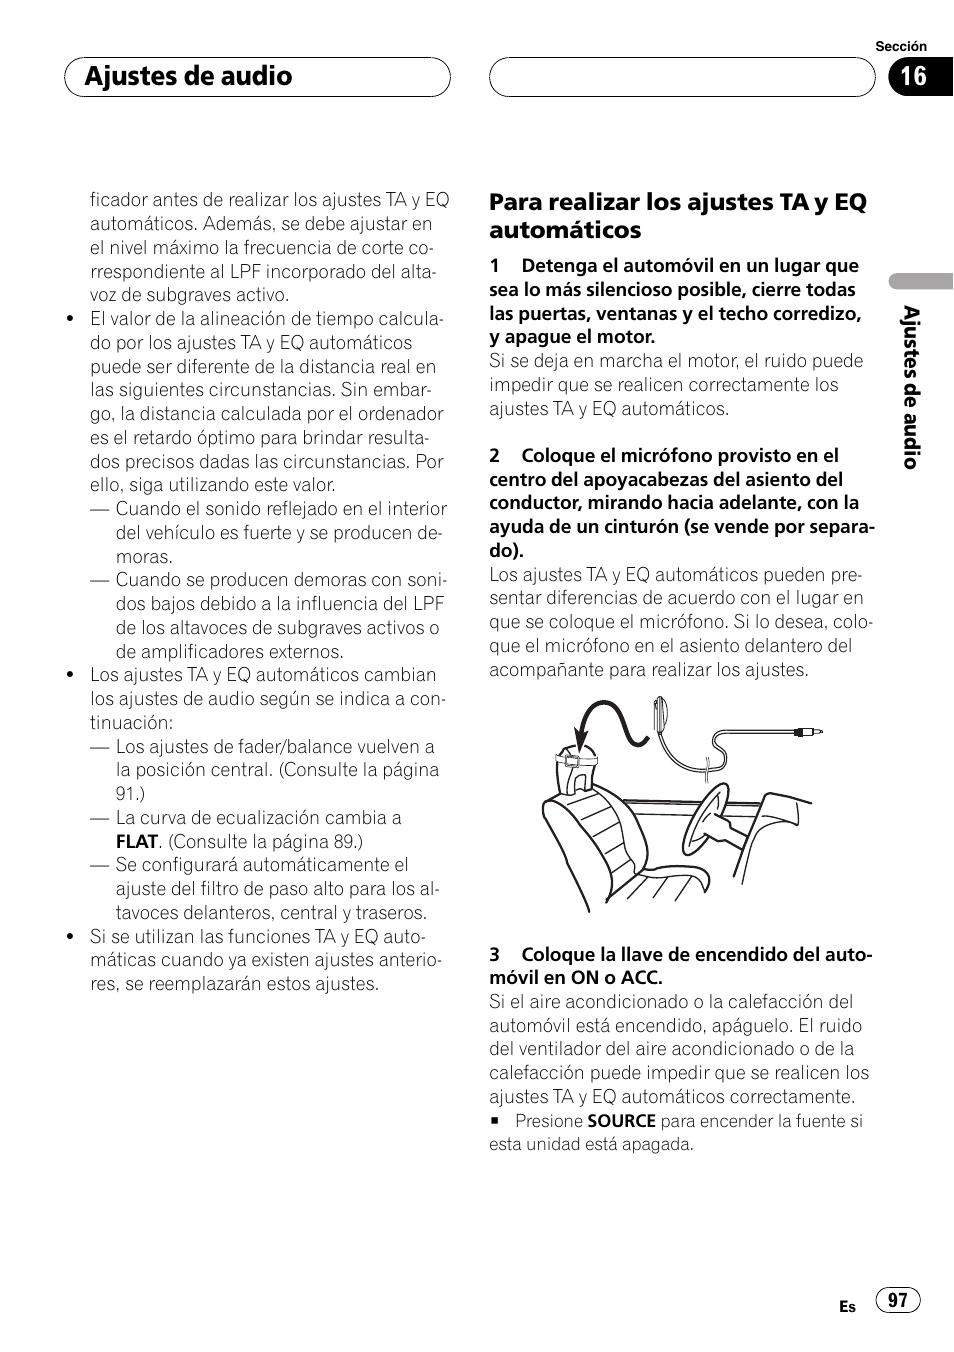 Ajustes de audio, Para realizar los ajustes ta y eq automáticos | Pioneer AVH-P7500DVD Manual del usuario | Página 97 / 132